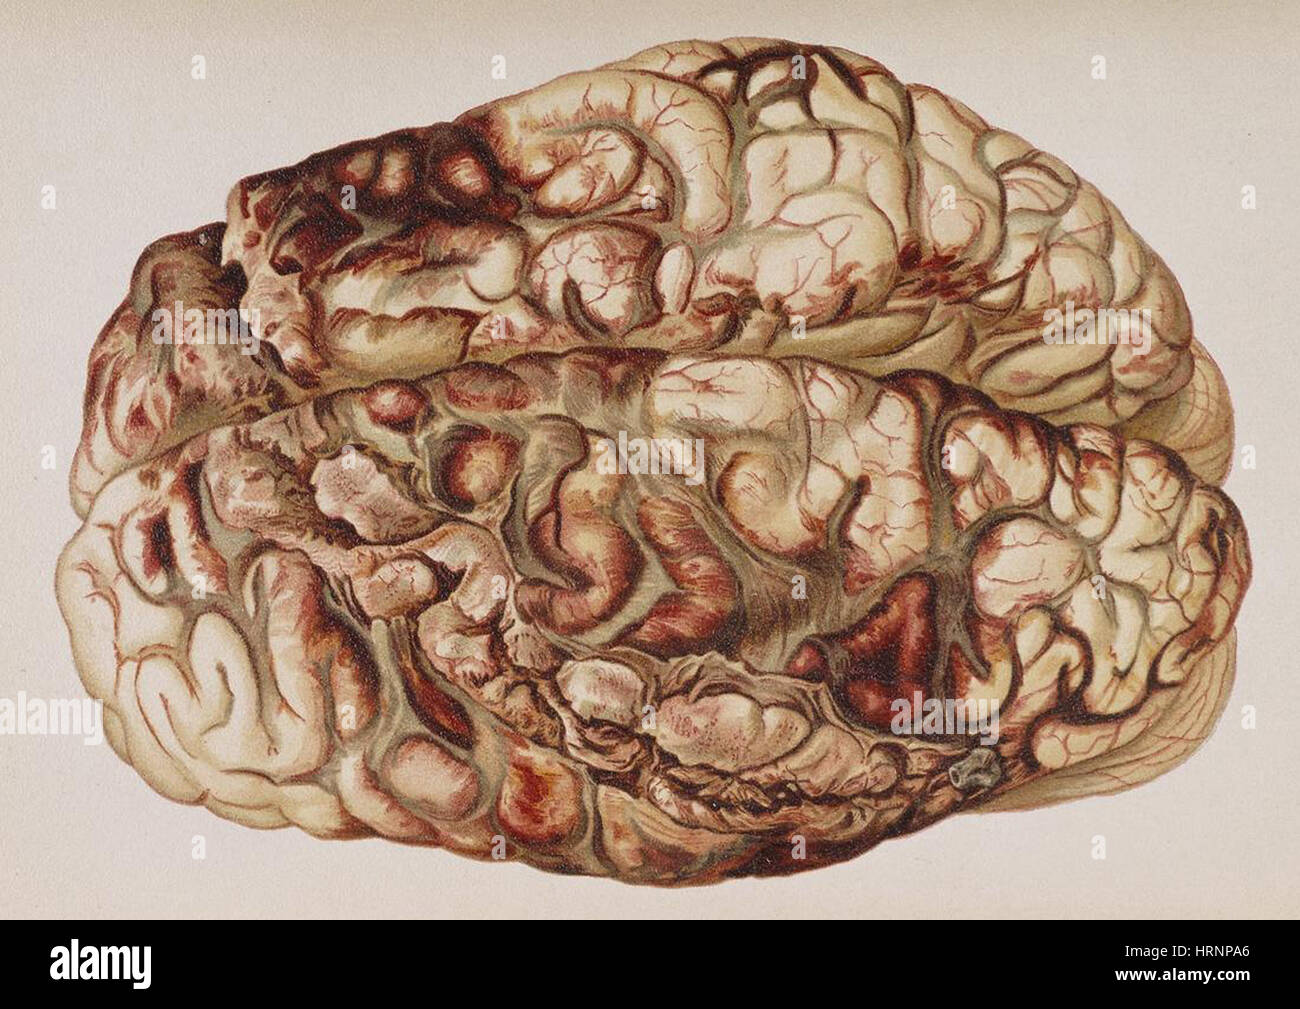 Encircling Gunshot-Wound in Brain, 1898 Stock Photo